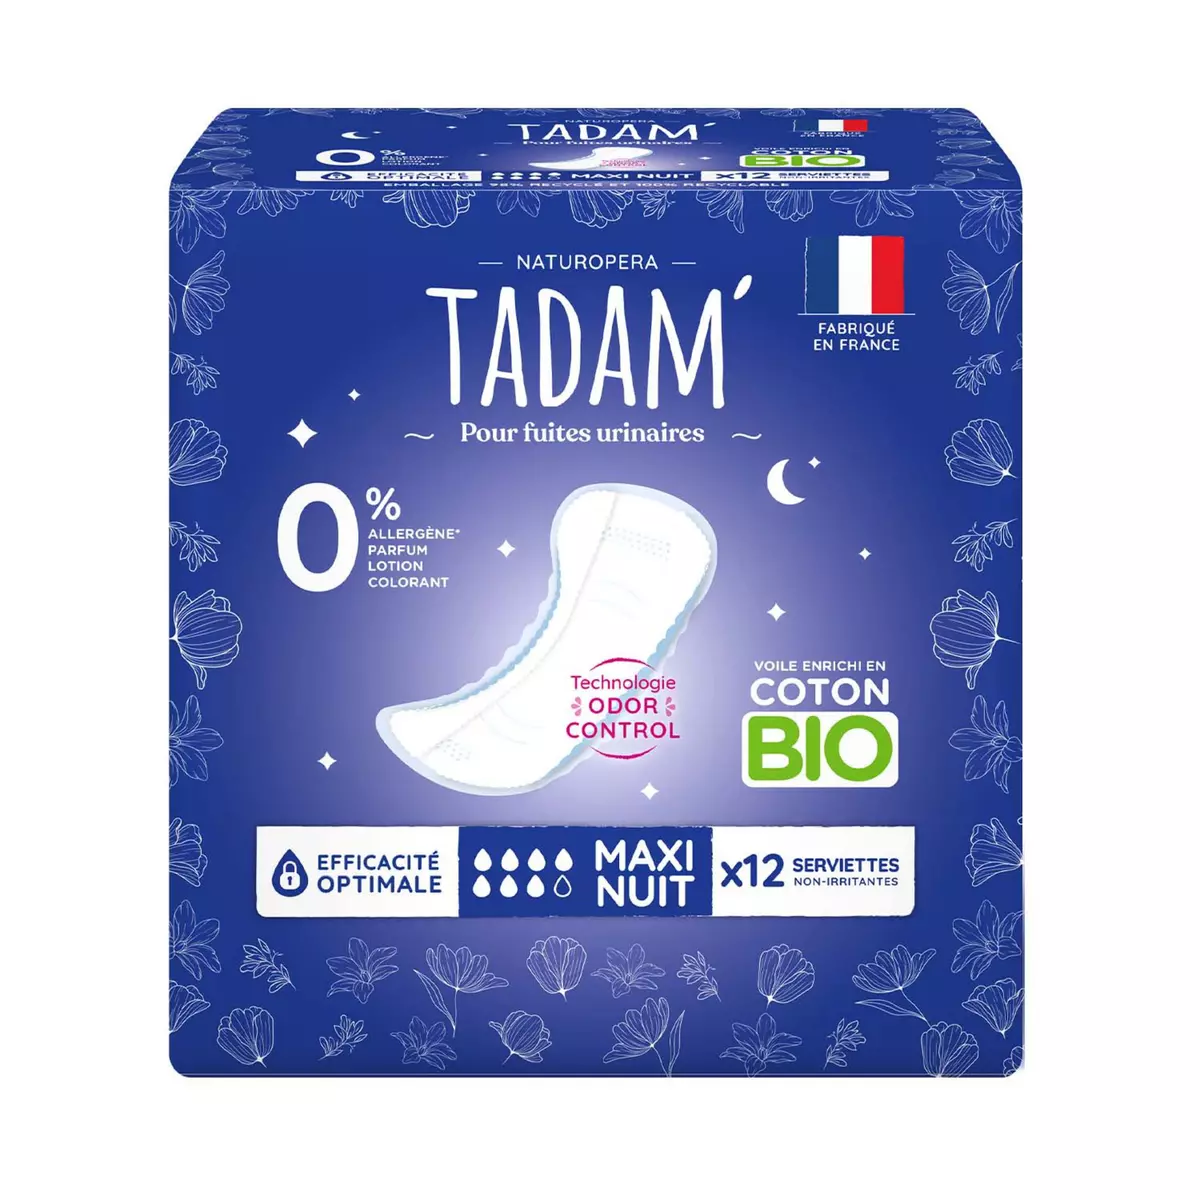 TADAM Serviettes hygiéniques maxi nuit pour fuites urinaires 100% coton bio 12 serviettes